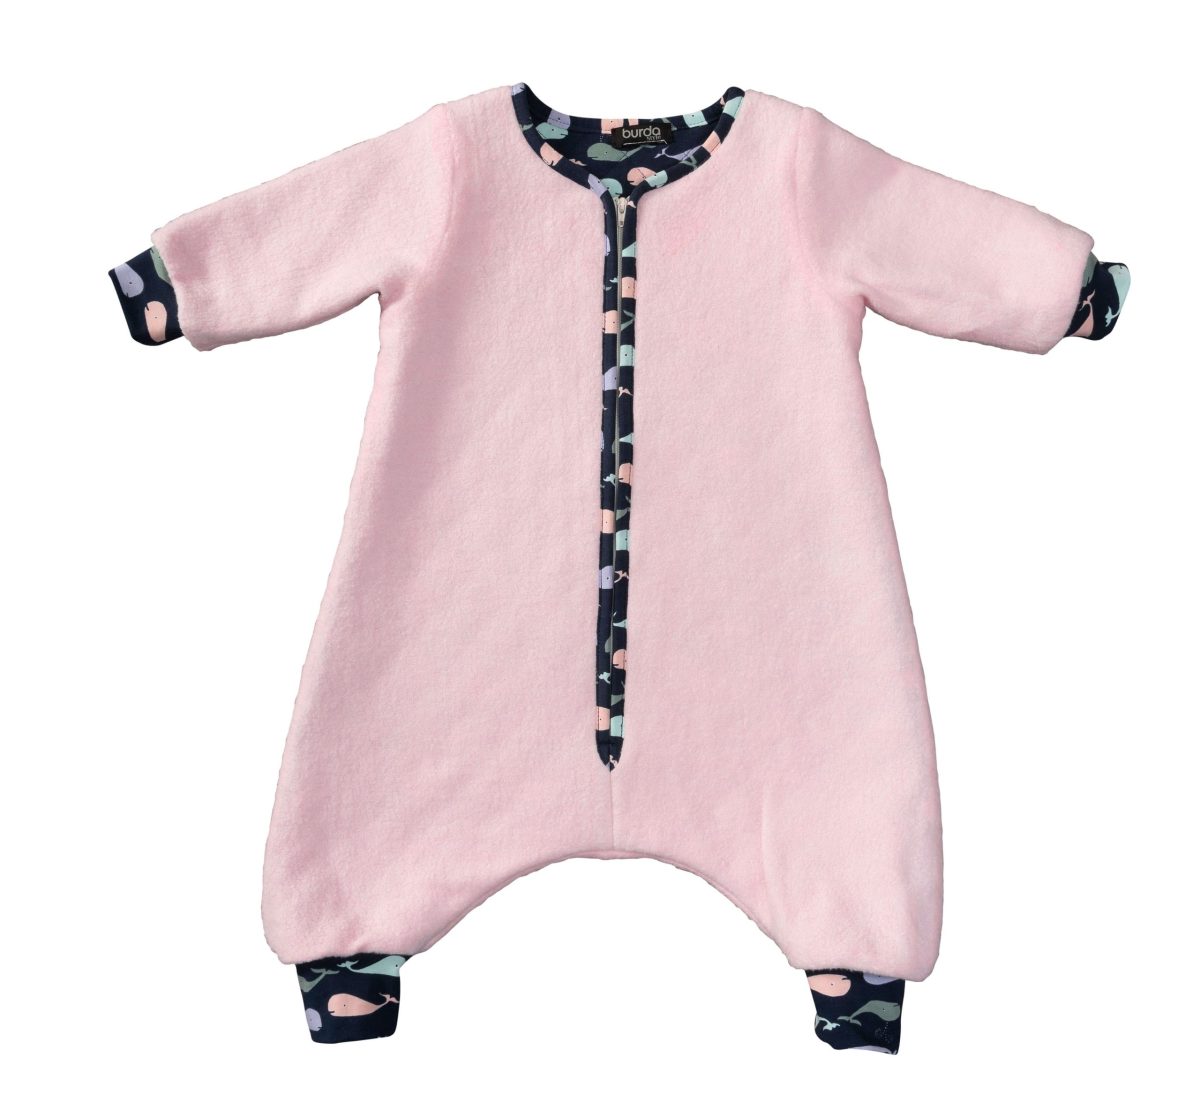 Burda Style Pattern 9298 Toddlers' Infants Sleeping Bag Or Jumpsuit